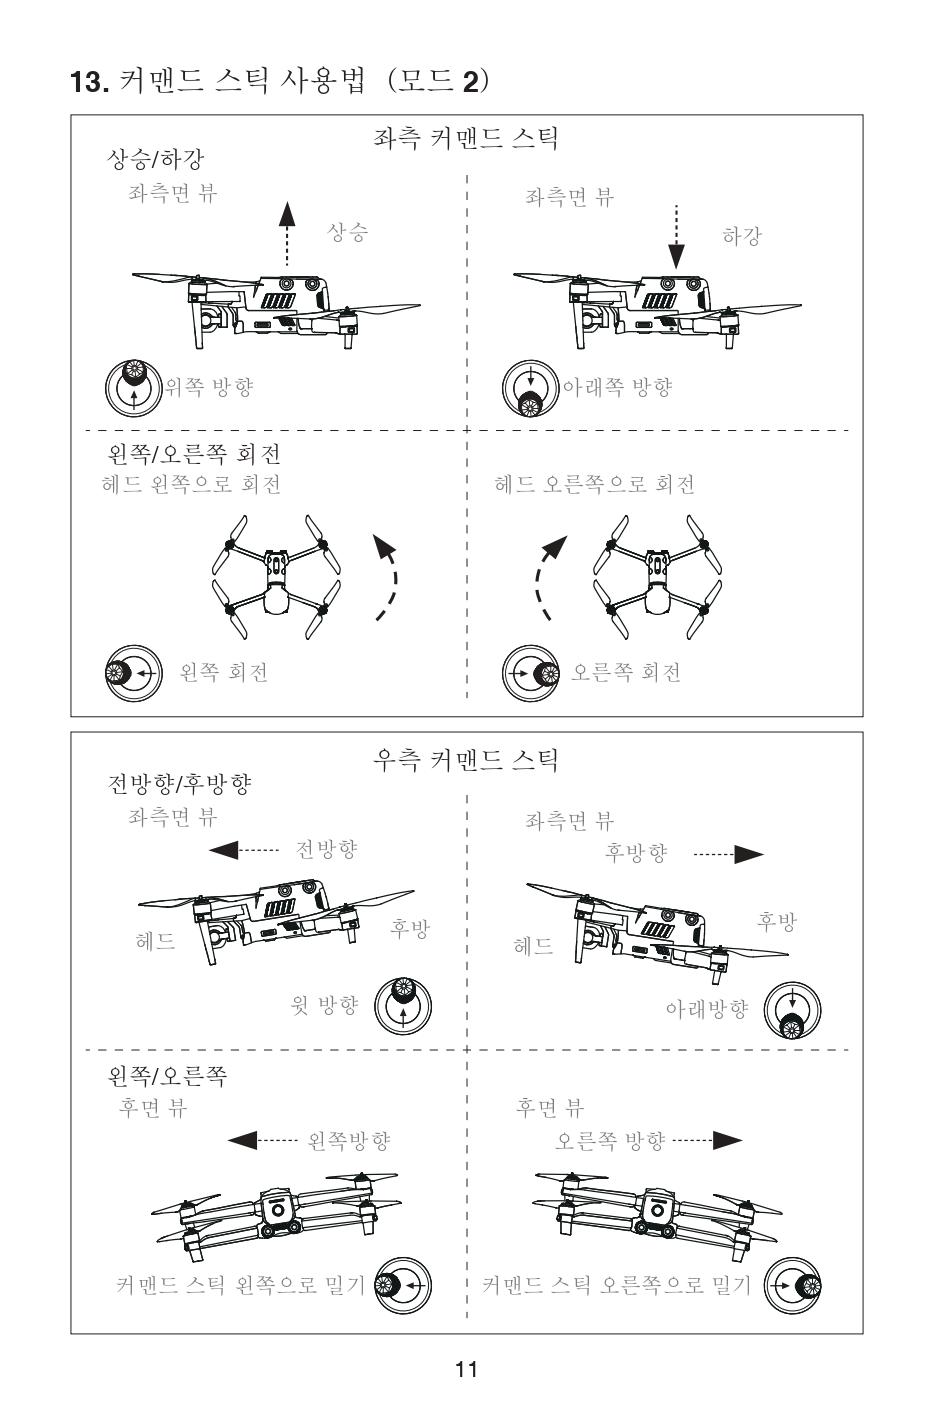 오텔 에보2 드론 사용자 퀵 가이드;Autel Robotics EVO2 Drone User Quick Guide;덕유항공은 DJI드론을 취급하지 않는 오텔드론 총판입니다.